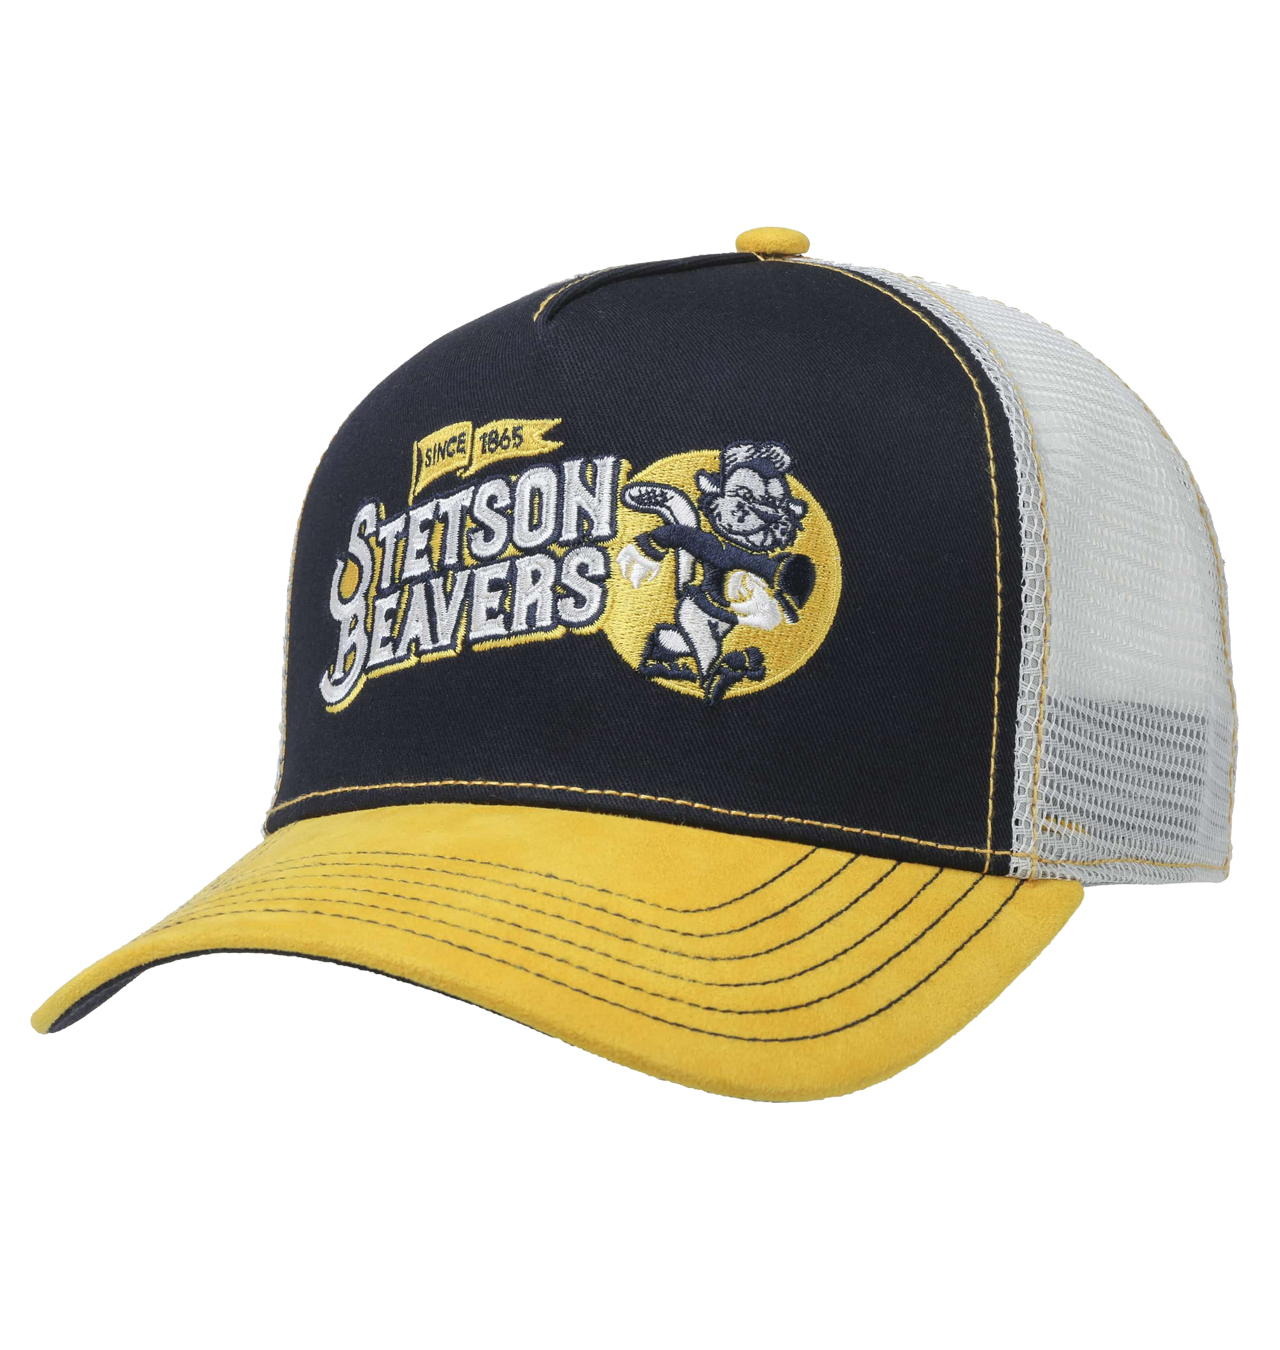 Stetson - Football Beavers Trucker Cap - Grey/Blue